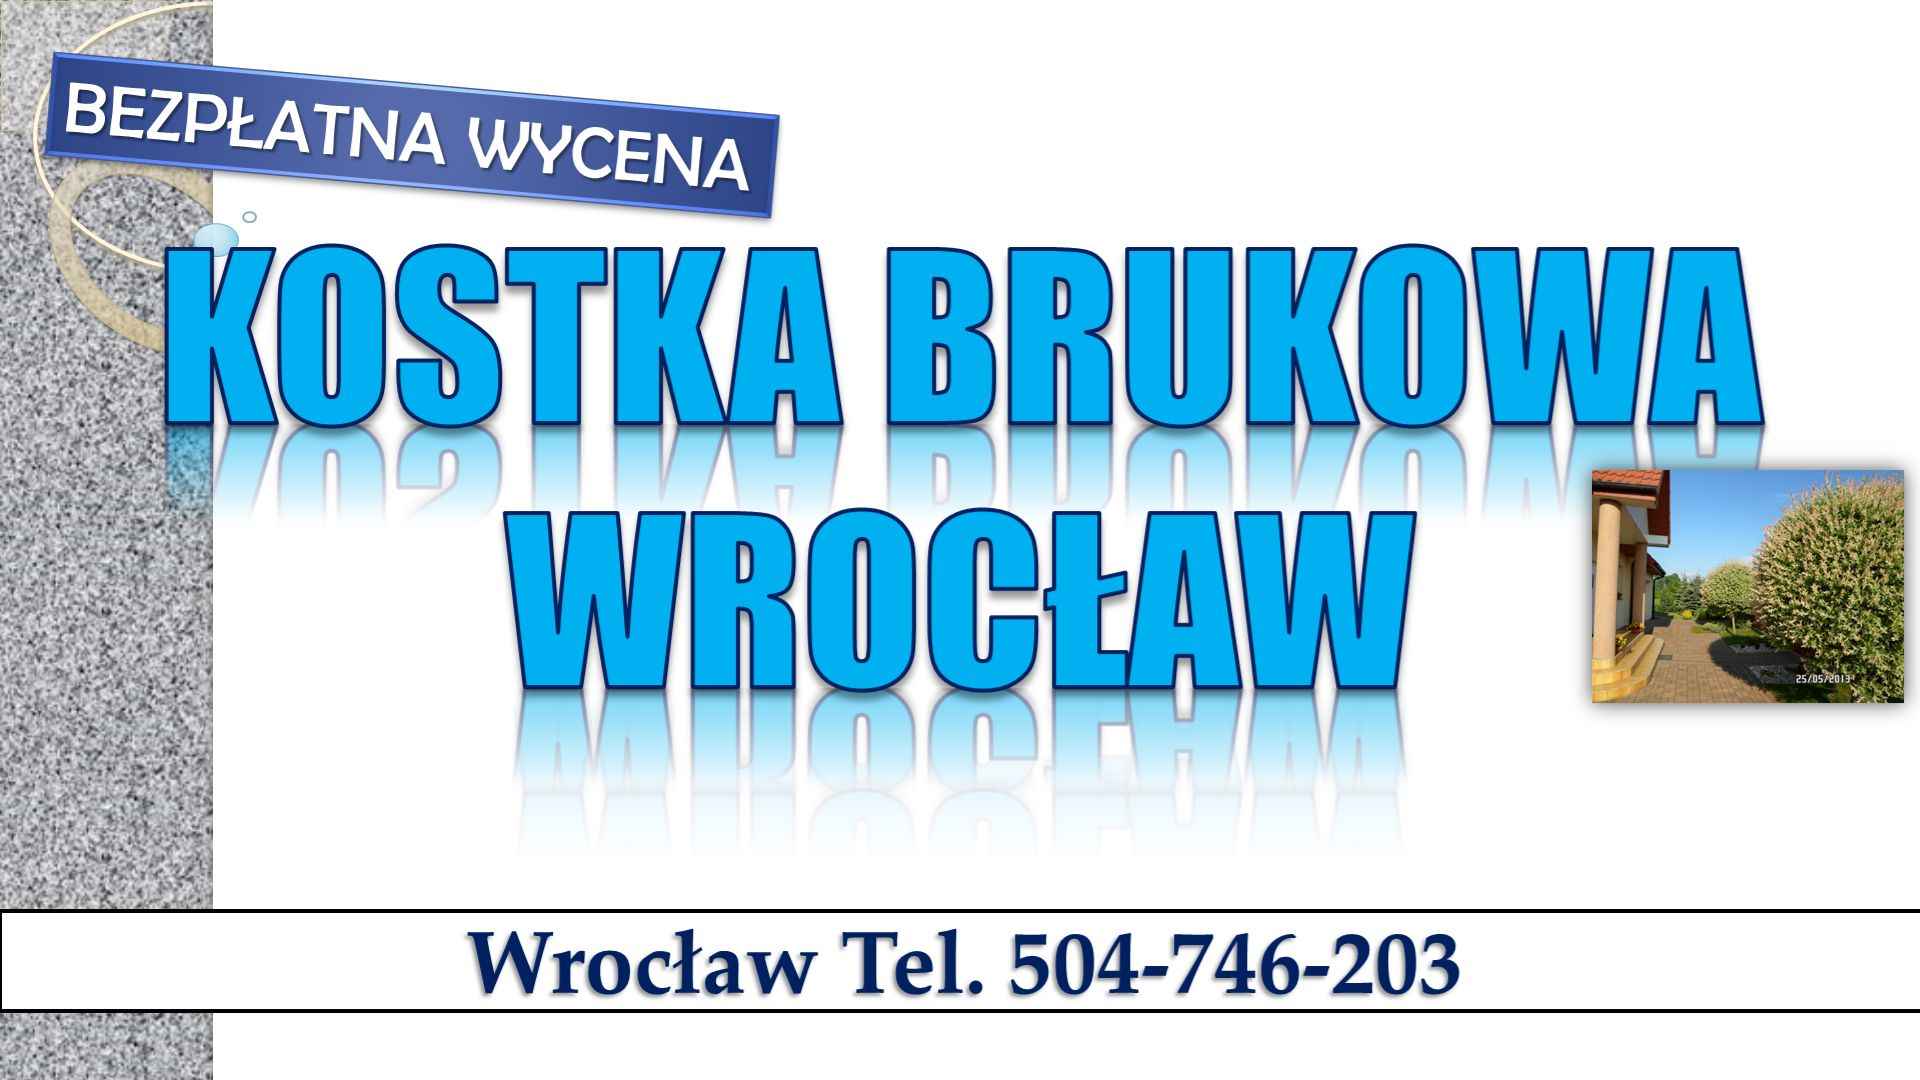 Układanie kostki brukowej Wrocław, tel. 504-746-203. Cennik usługi. Psie Pole - zdjęcie 7